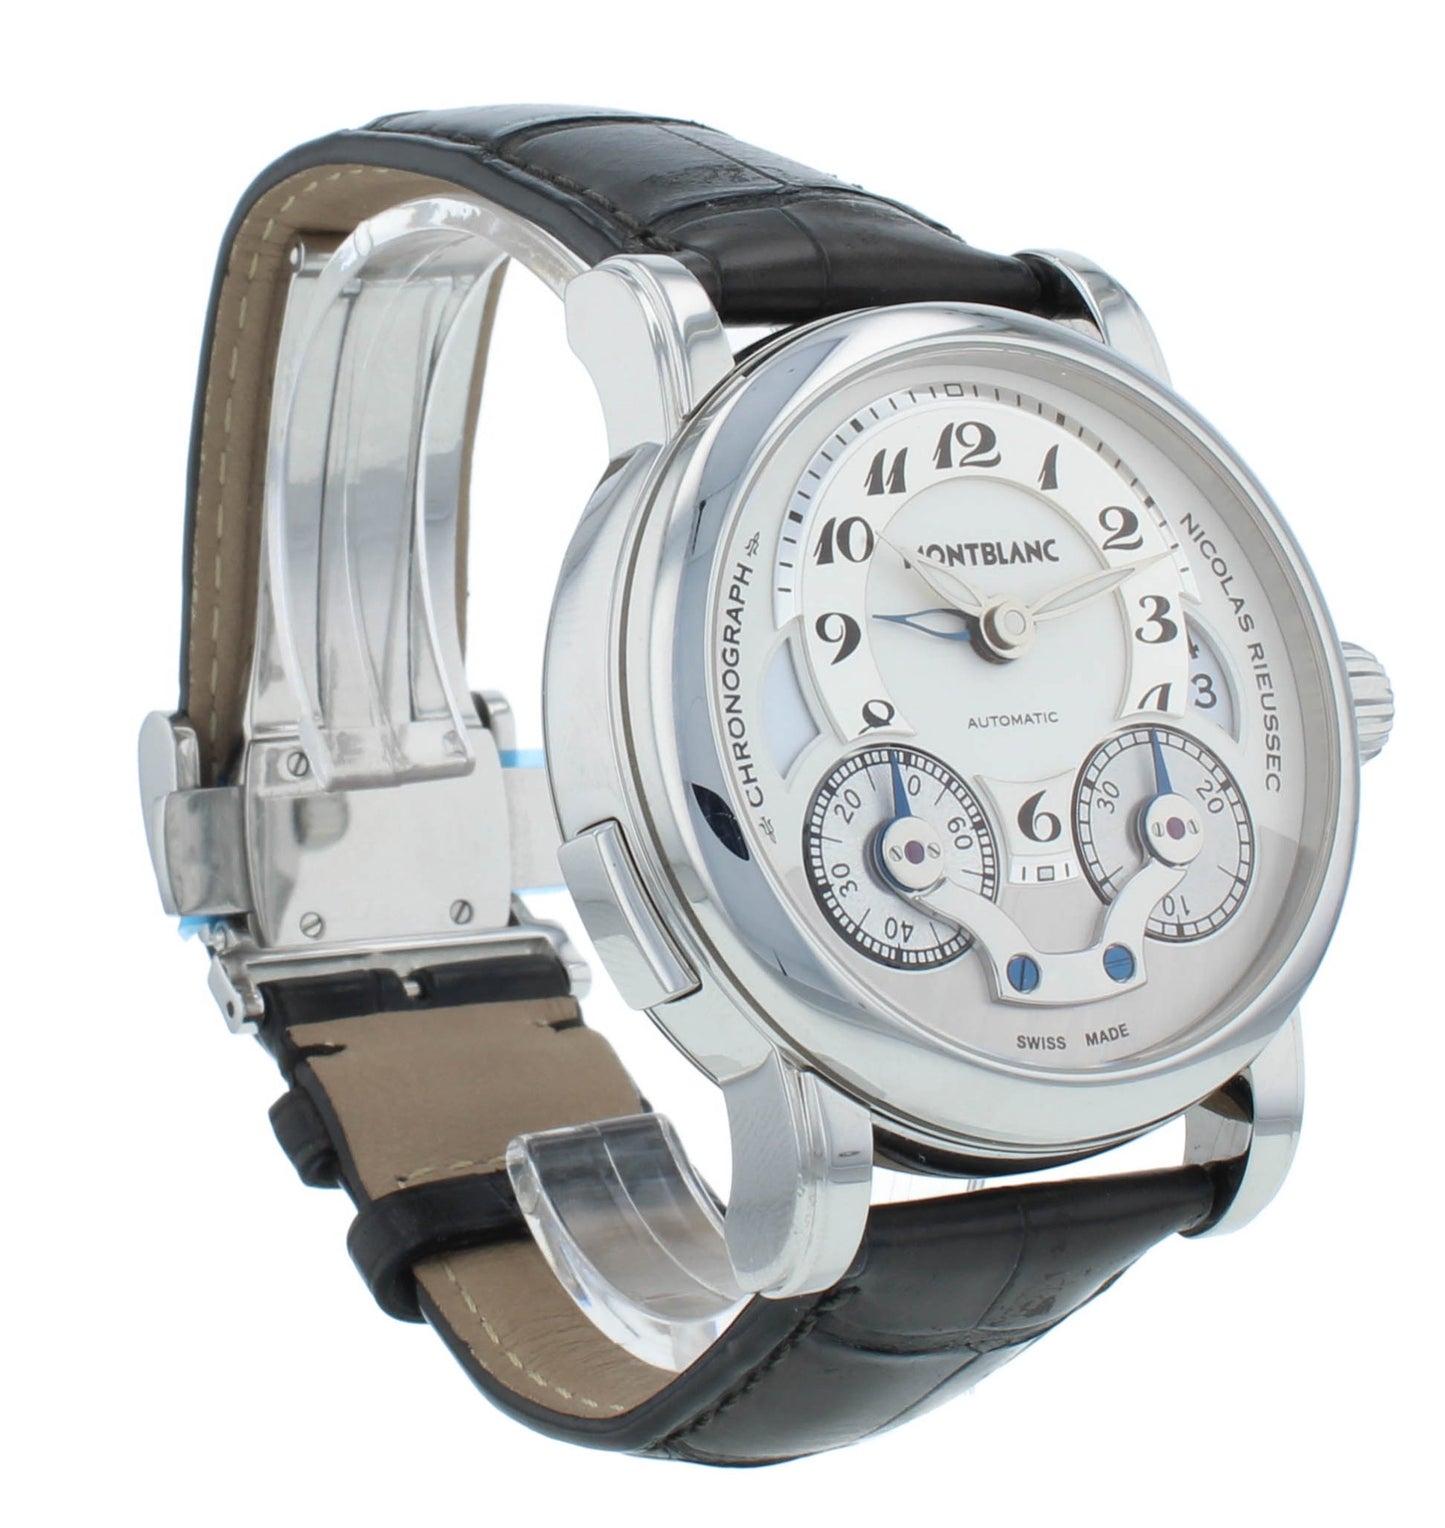 Montblanc Nicolas Rieussec 43mm Chronograph GMT Automatic Men's Watch 7138